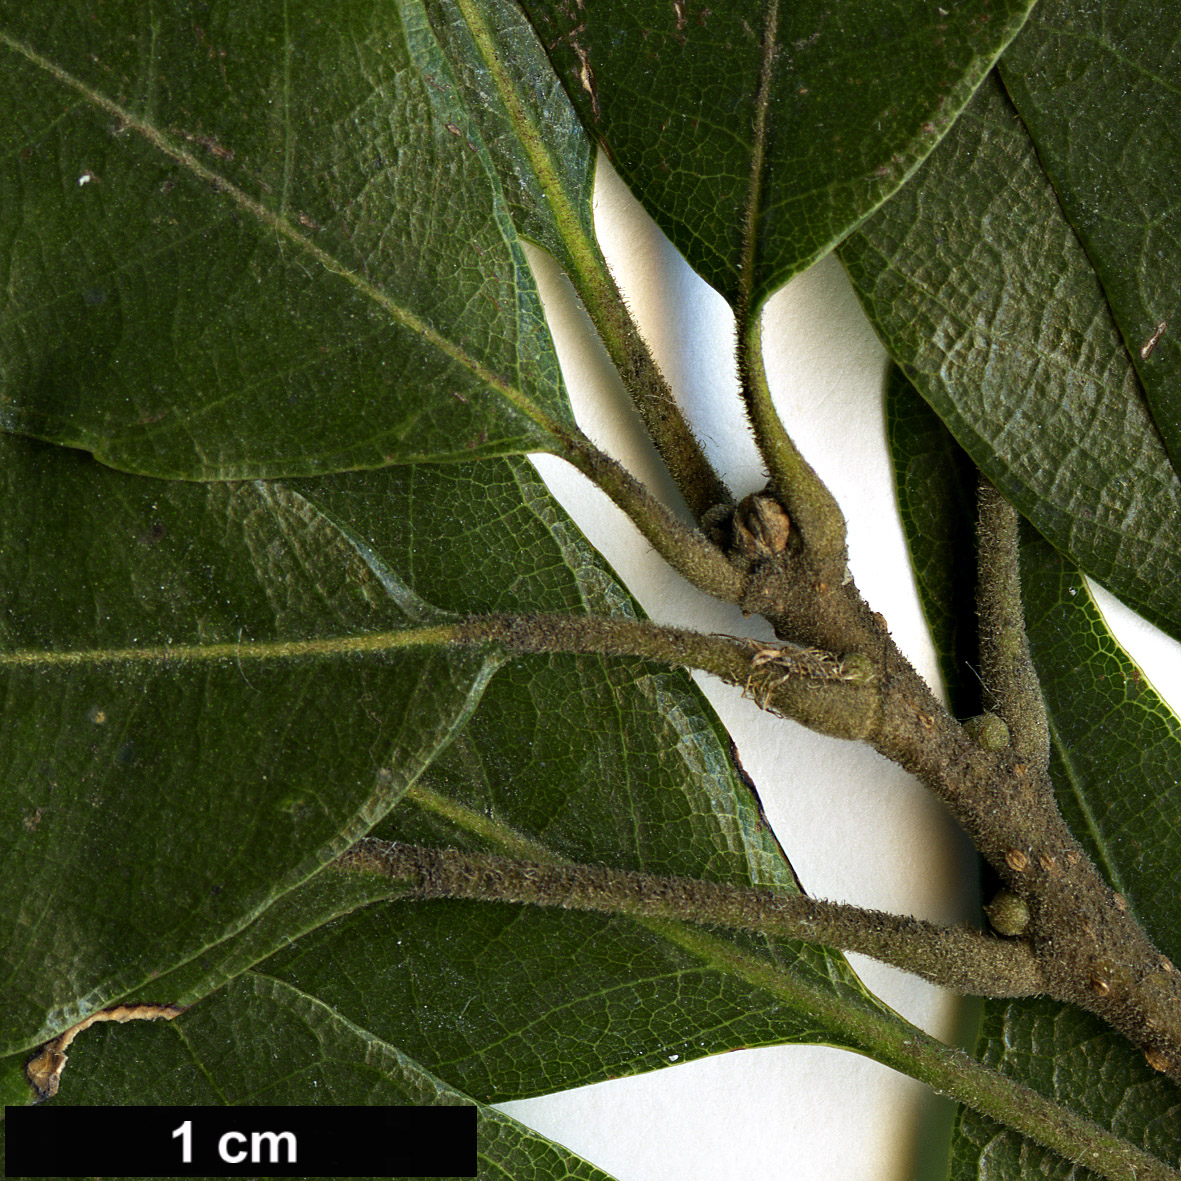 High resolution image: Family: Fagaceae - Genus: Lithocarpus - Taxon: konishii